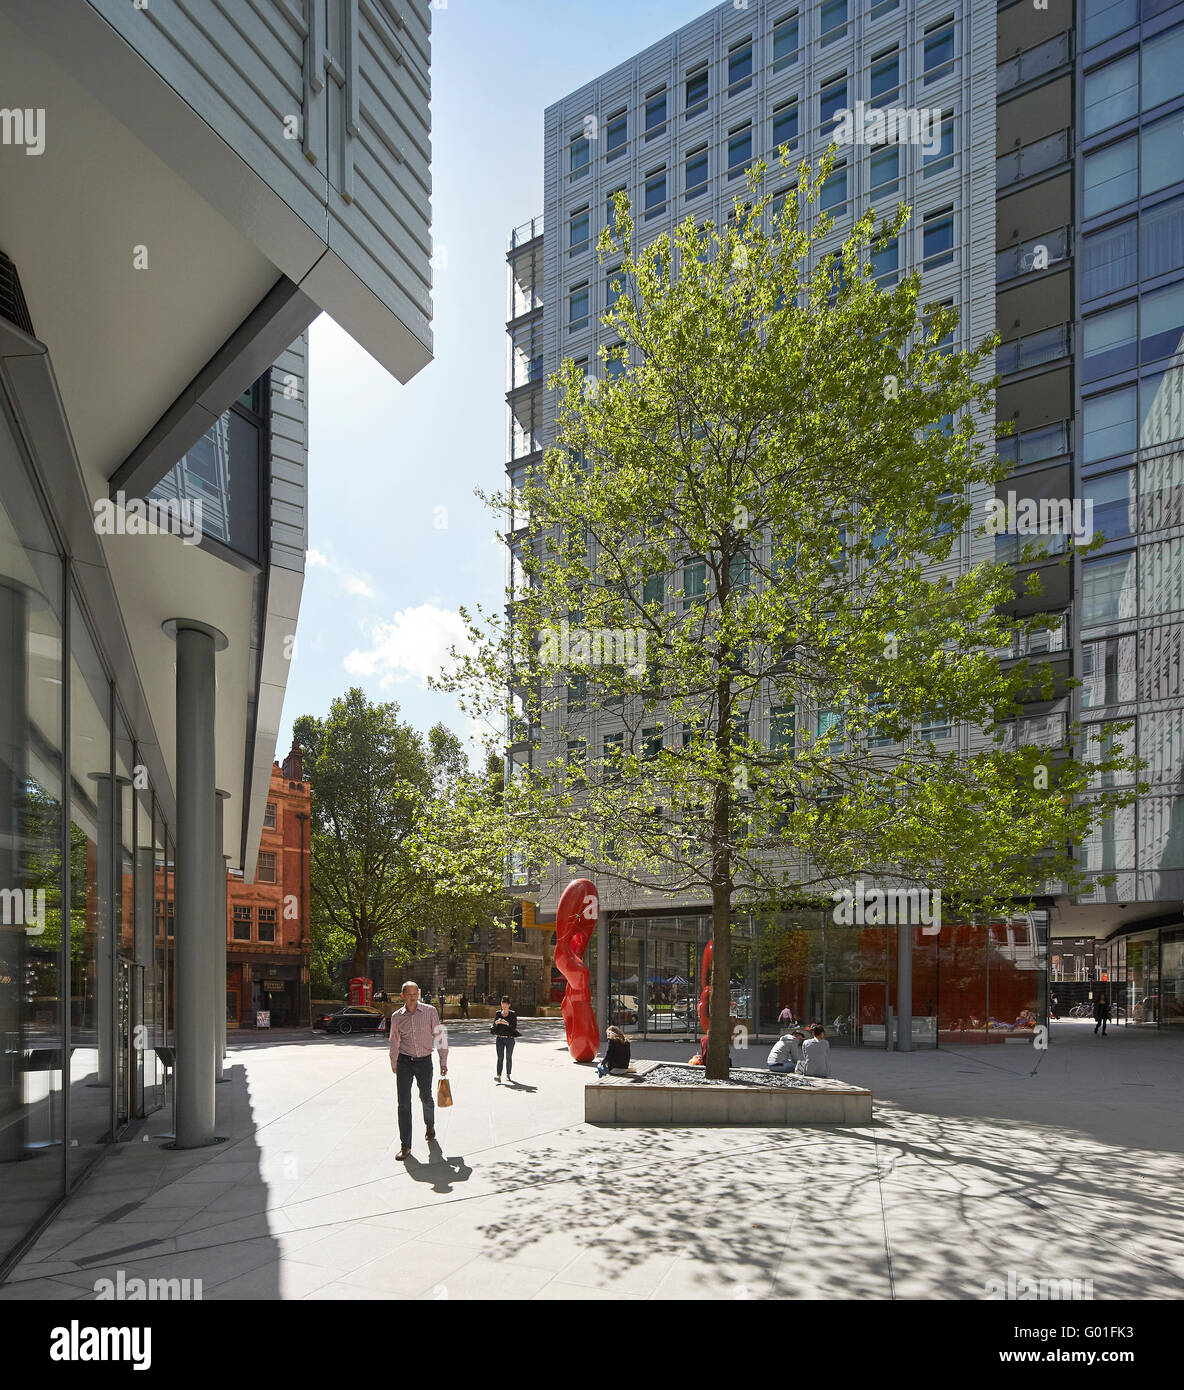 Soleado patio público. Central Saint Giles, Londres, Reino Unido. Arquitecto: Renzo Piano Building Workshop, 2015. Foto de stock